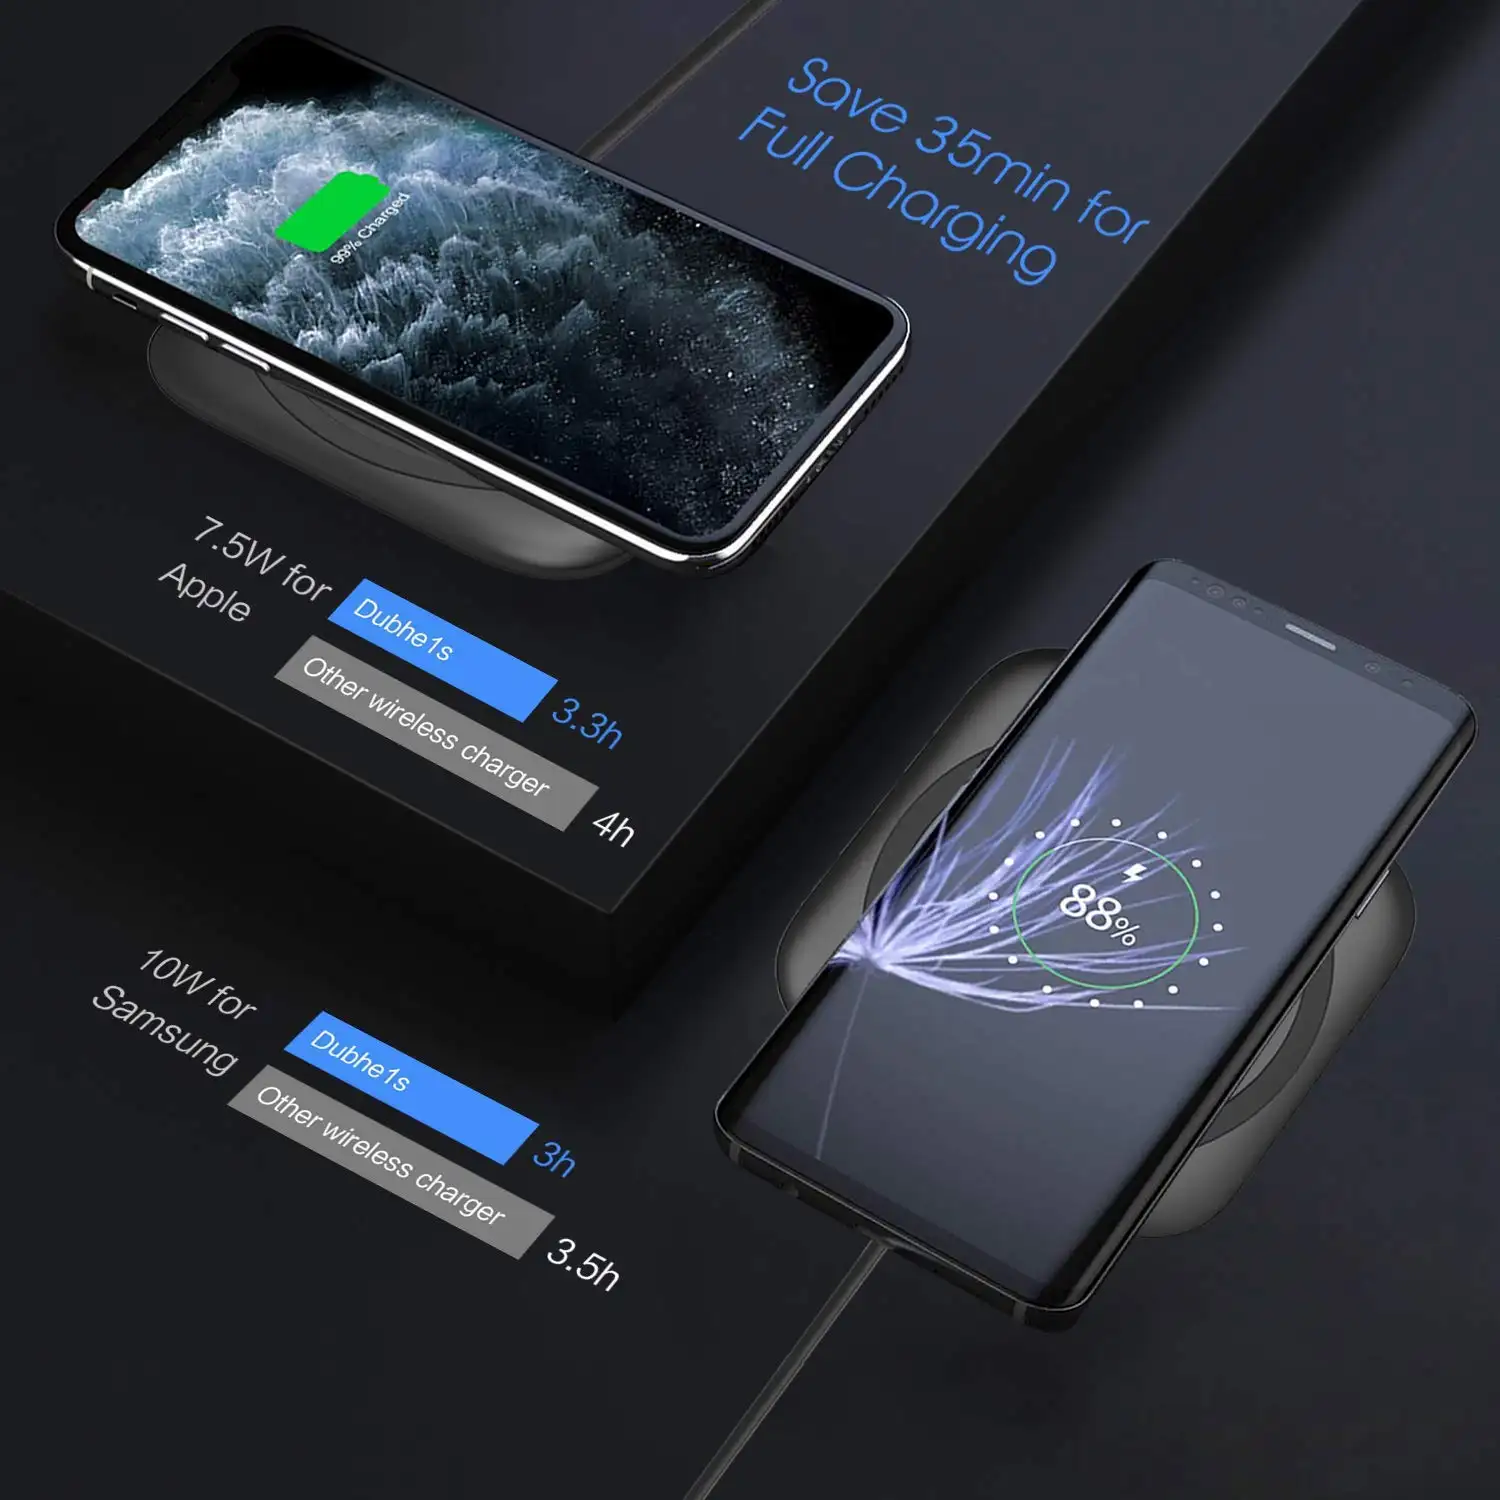 Smacat Новинка 2019, трендовый продукт, портативное беспроводное зарядное устройство Qi 10 Вт для iPhone, <span class=keywords><strong>apple</strong></span>, Samsung